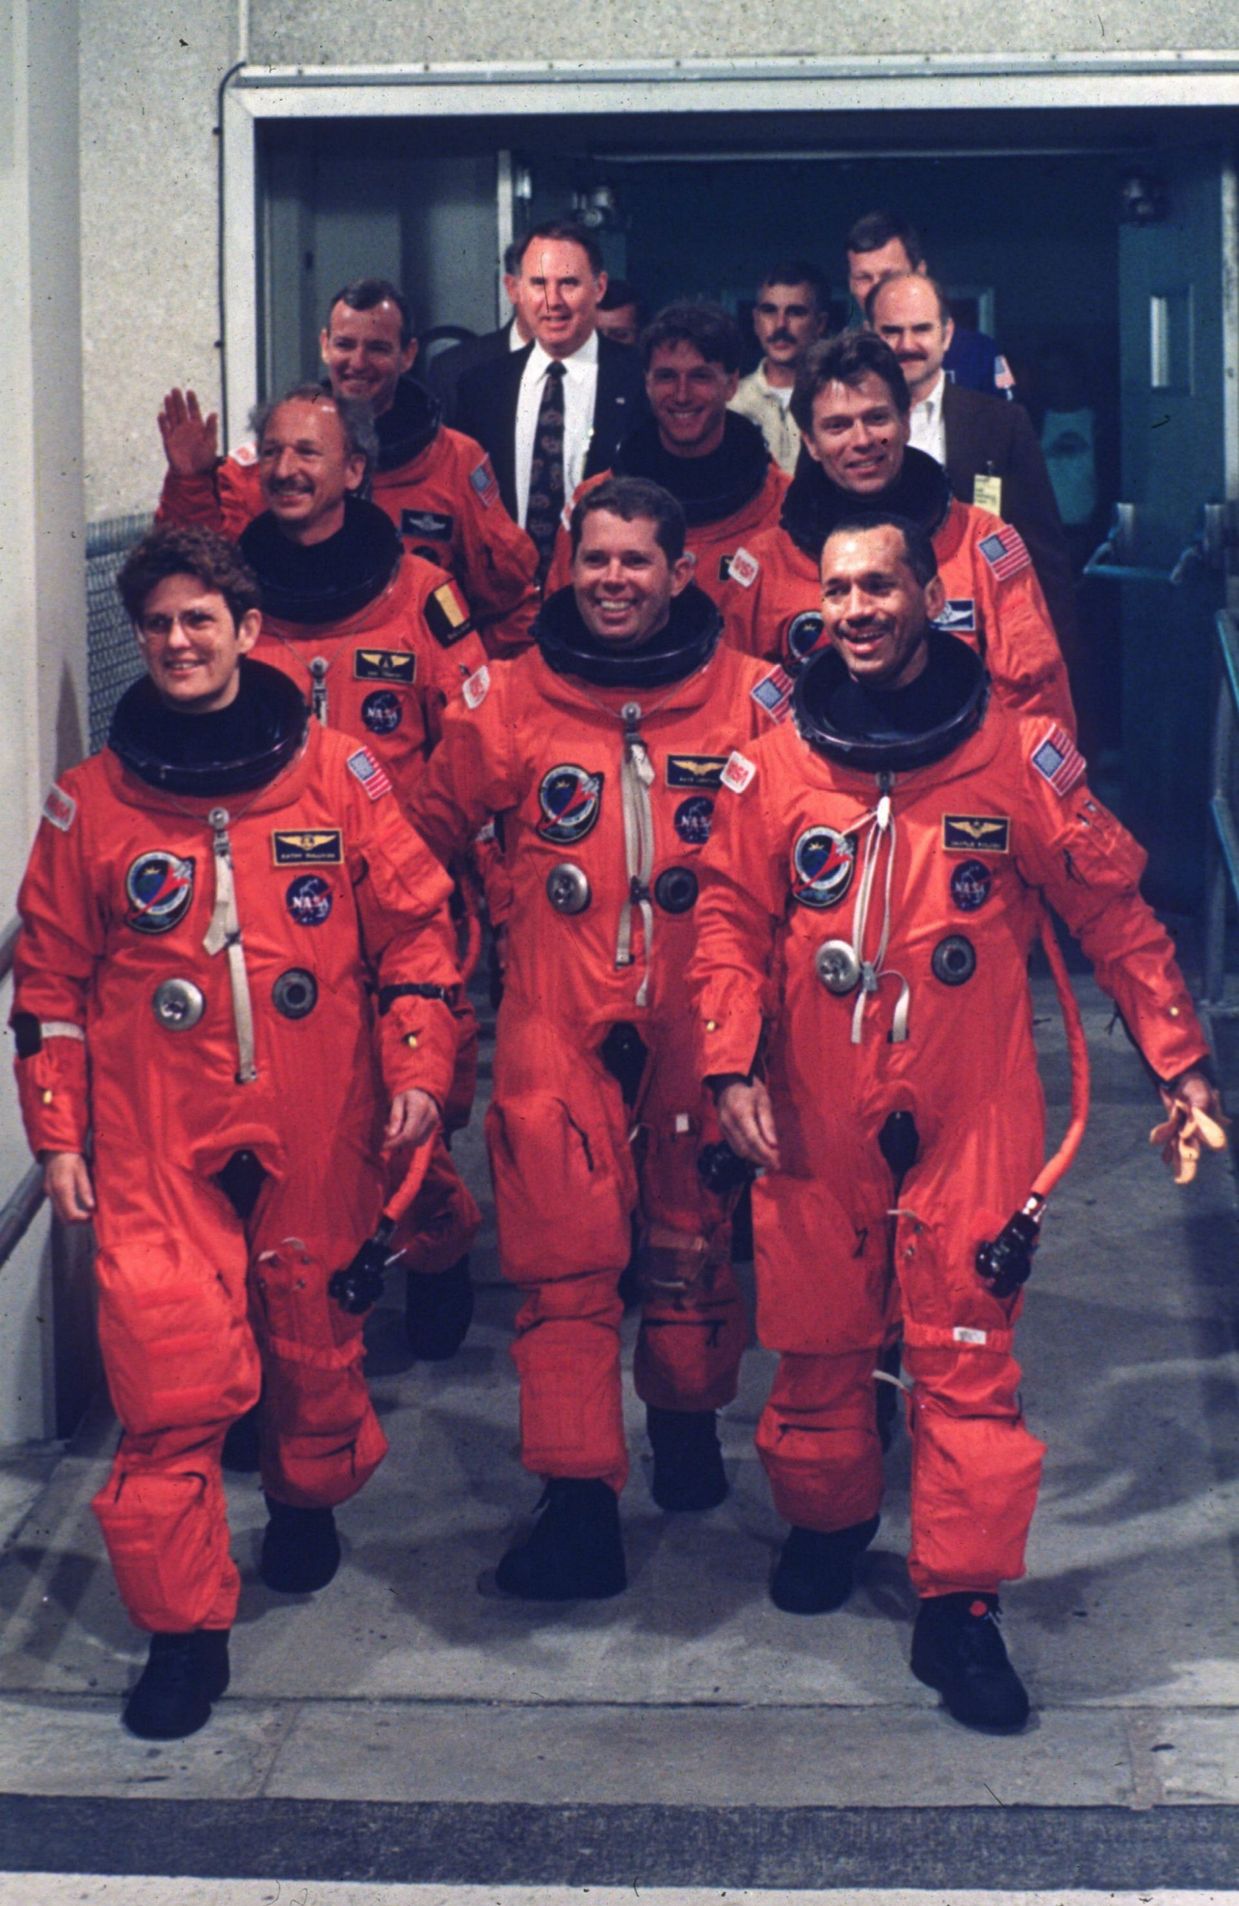 Les 7 astronautes après le succès de la mission spatiale Atlantis STS-45 - Kennedy Space Center. 